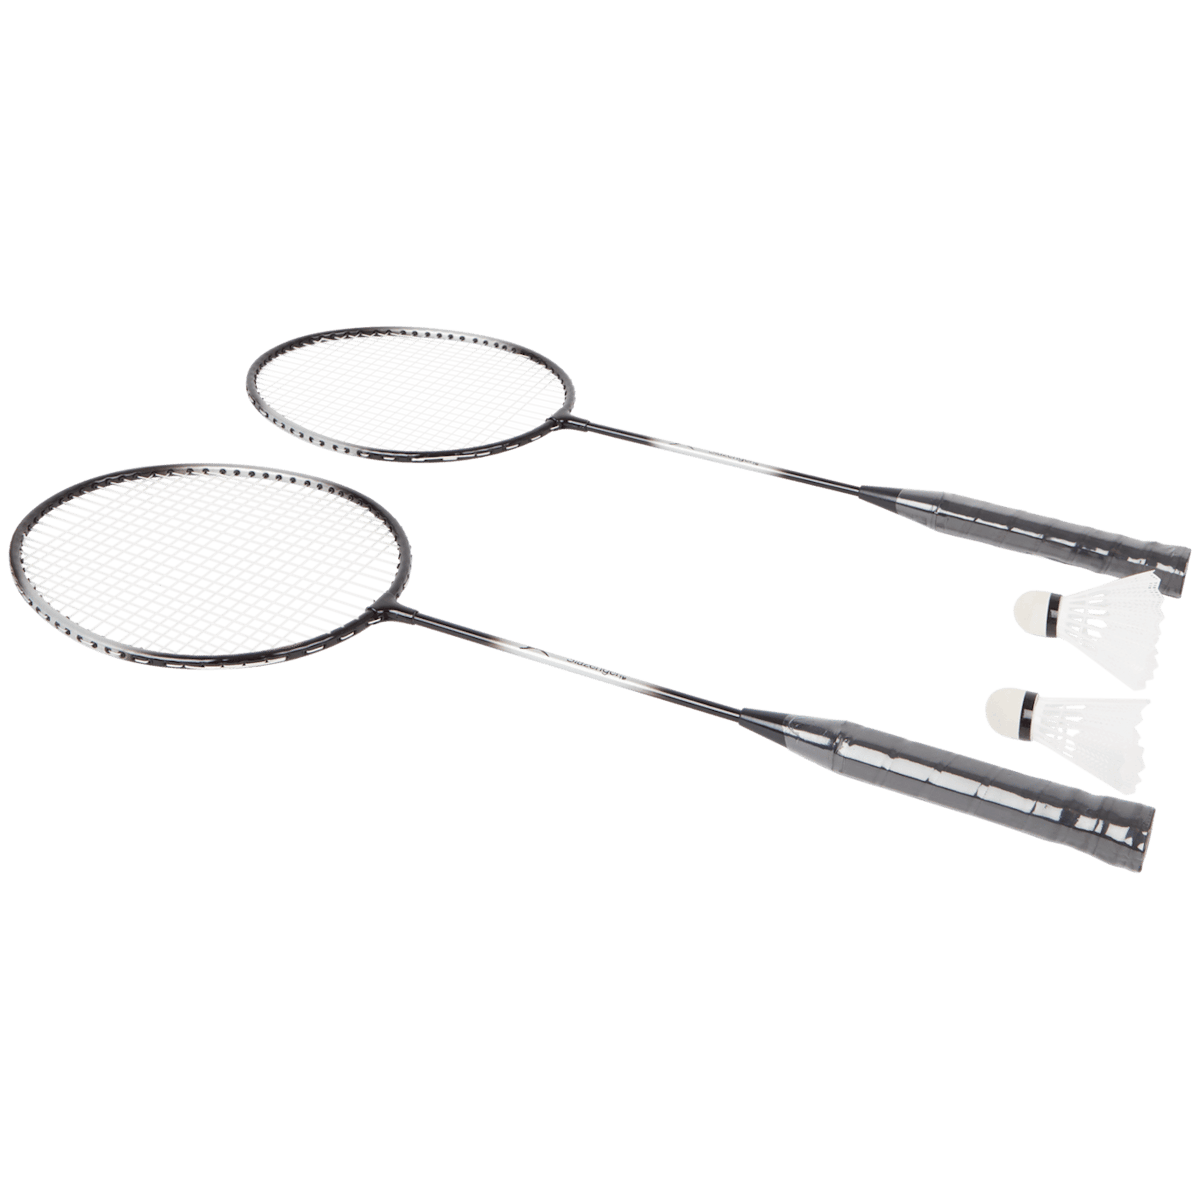 Slazenger badmintonset